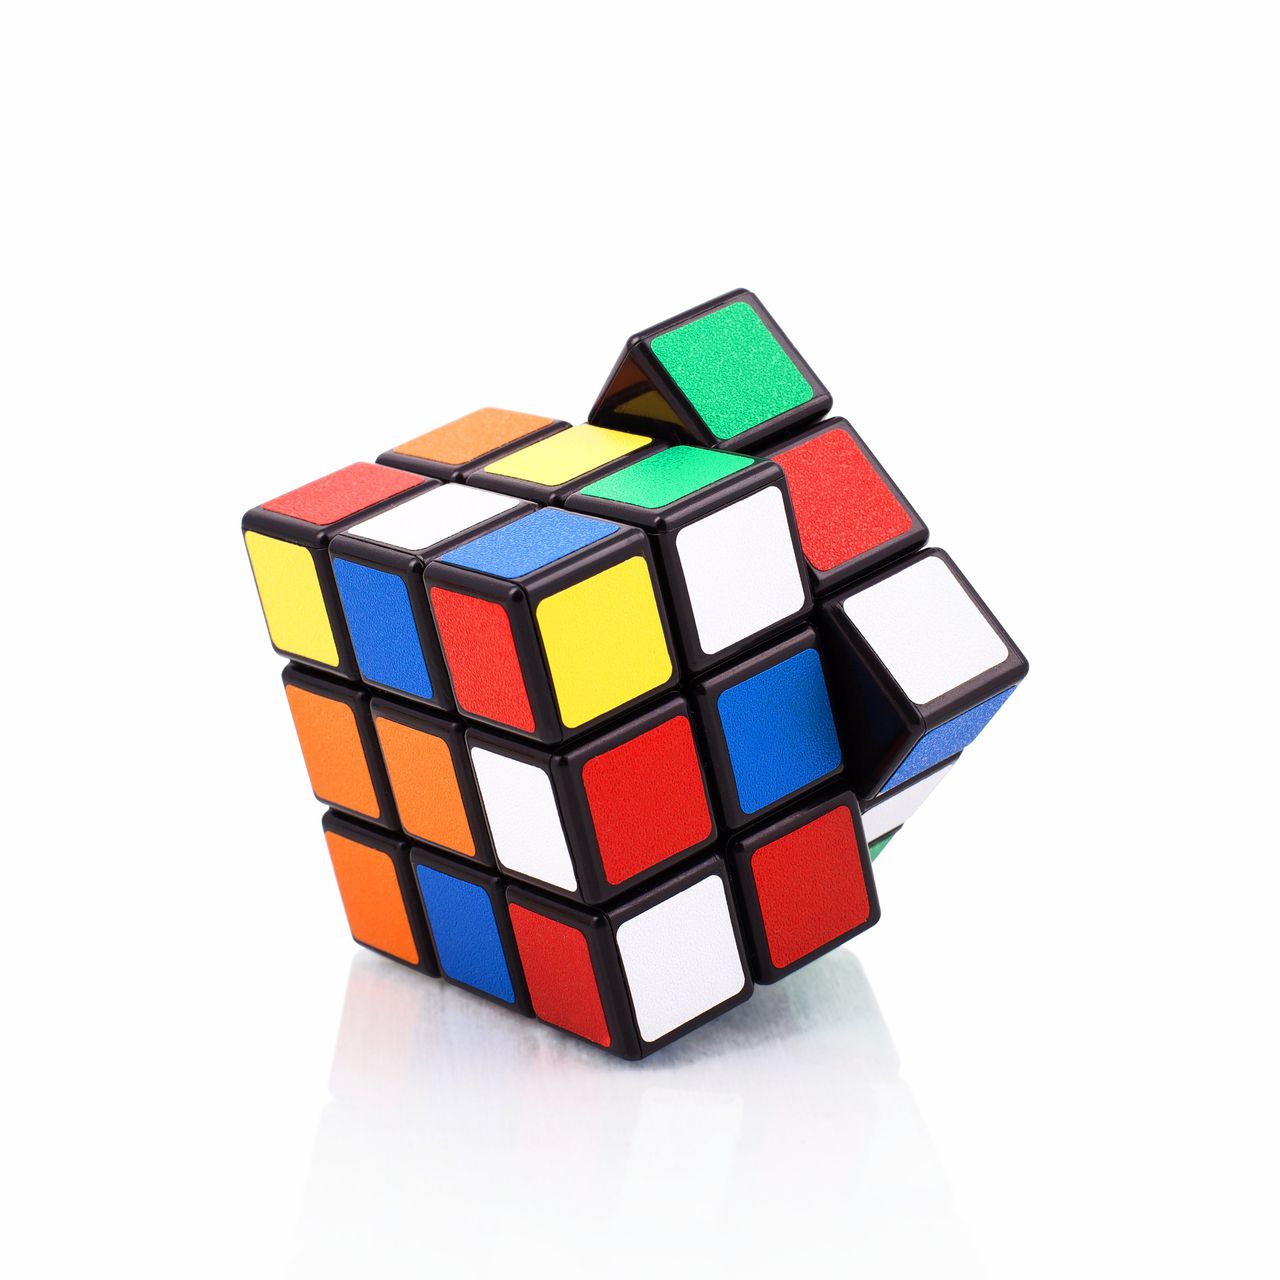 tack Pardon van mening zijn Kleur Rubiks kubus beschermd, vorm niet - NRC